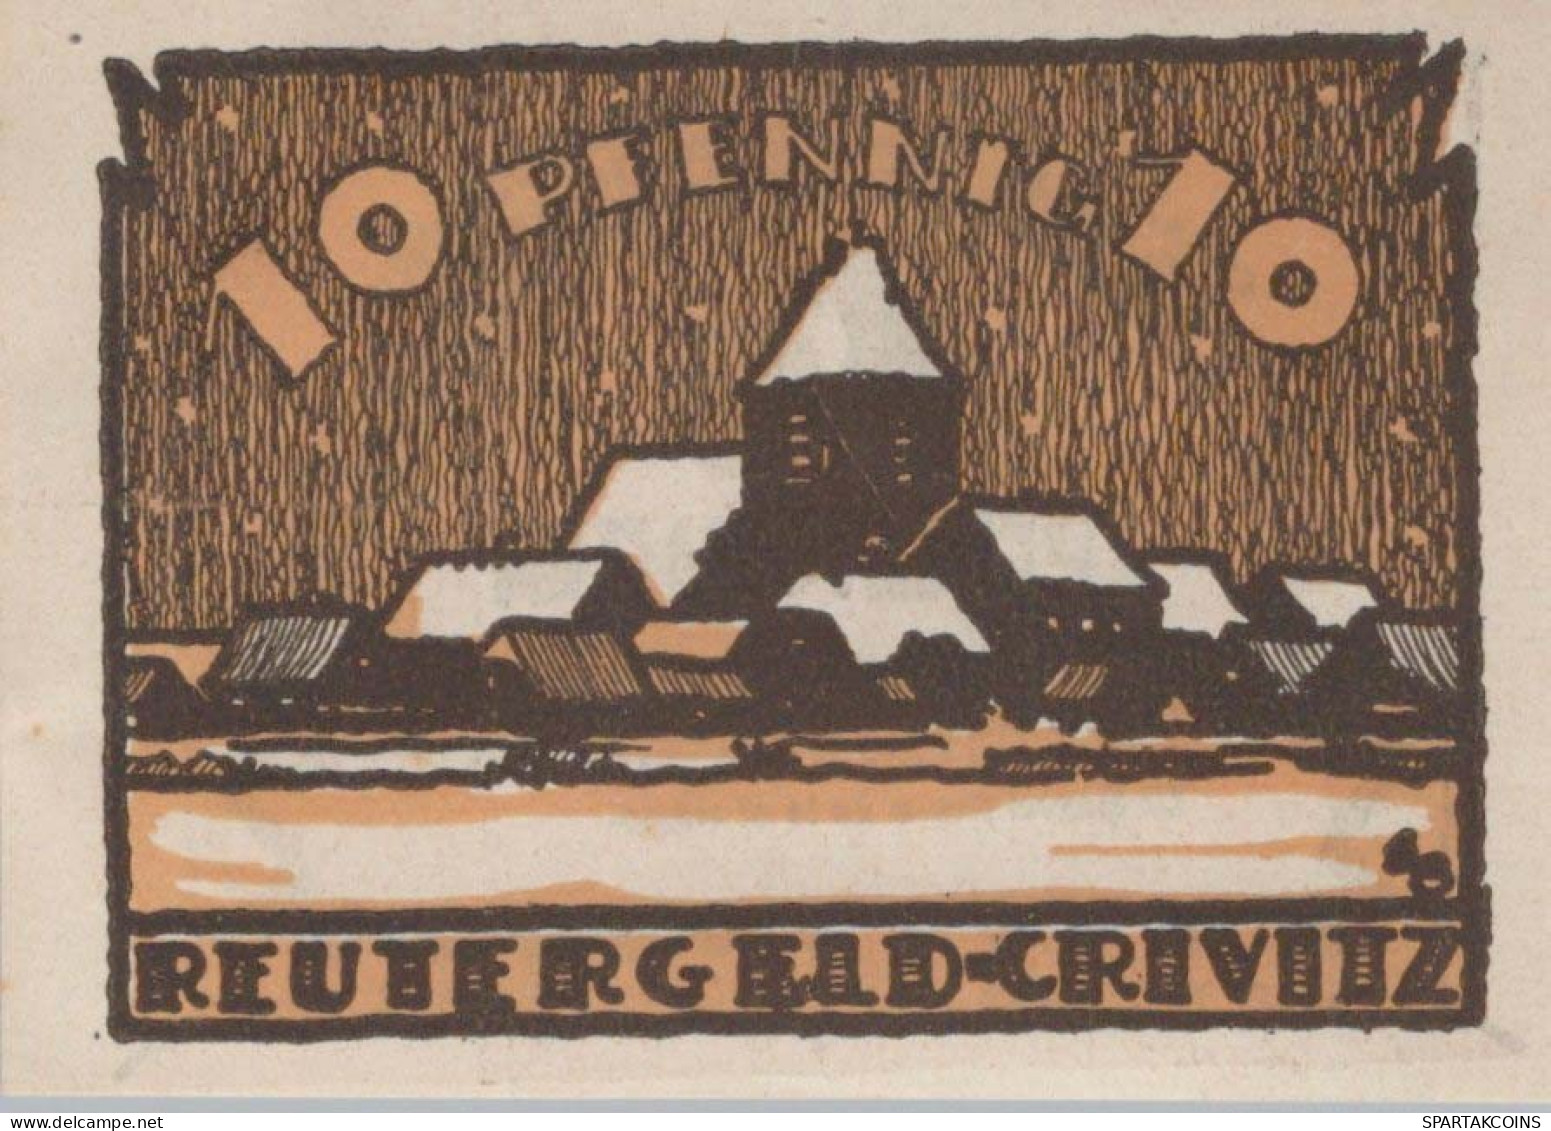 10 PFENNIG 1922 Stadt CRIVITZ Mecklenburg-Schwerin UNC DEUTSCHLAND #PA413 - [11] Local Banknote Issues